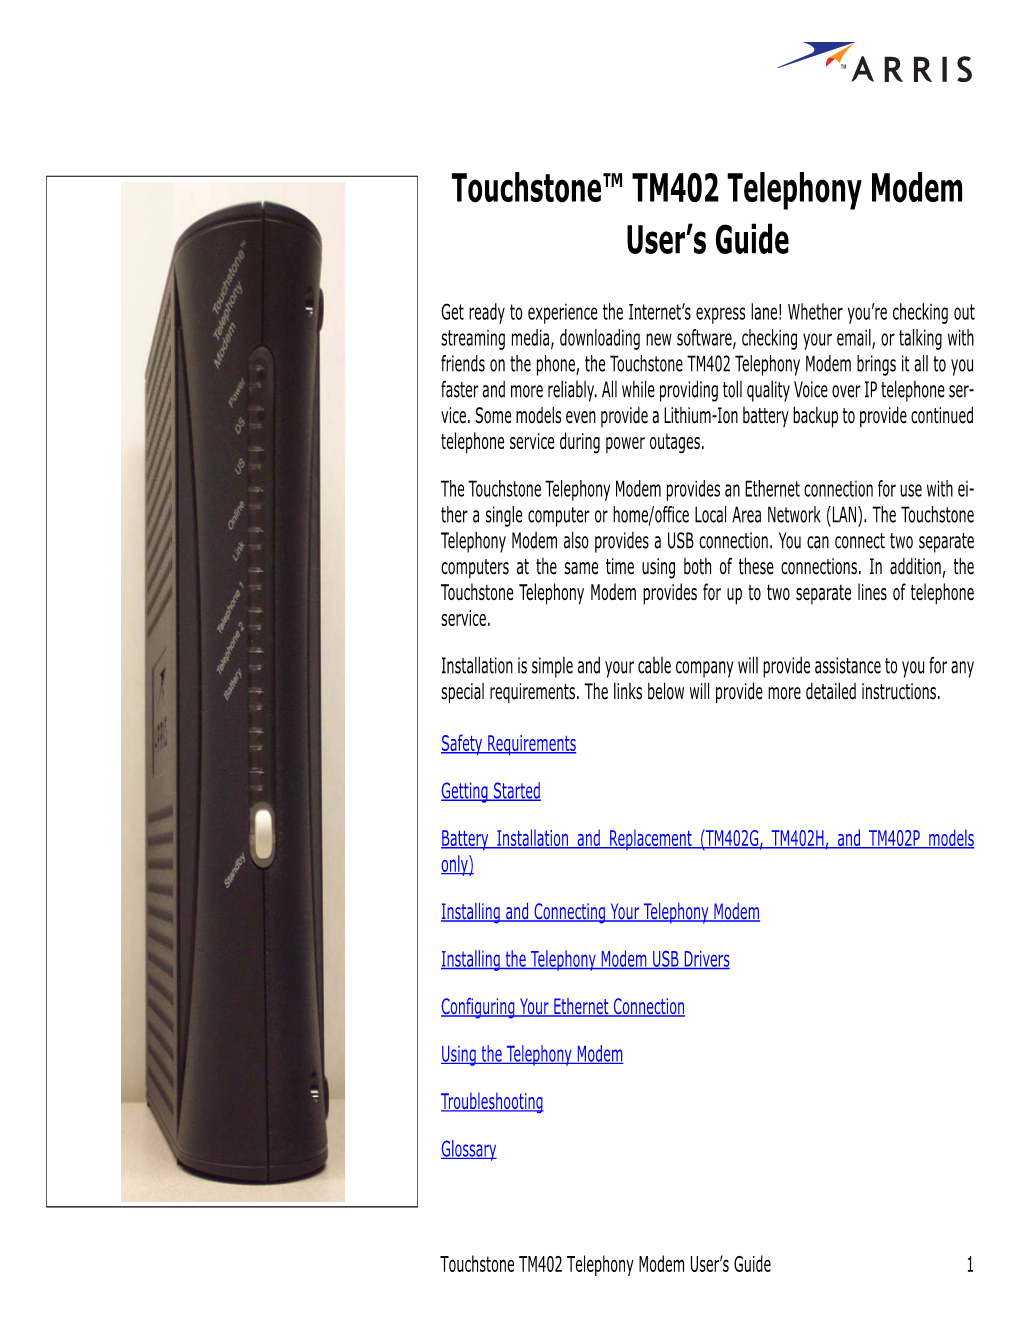 Touchstone TM402 Telephony Modem User's Guide